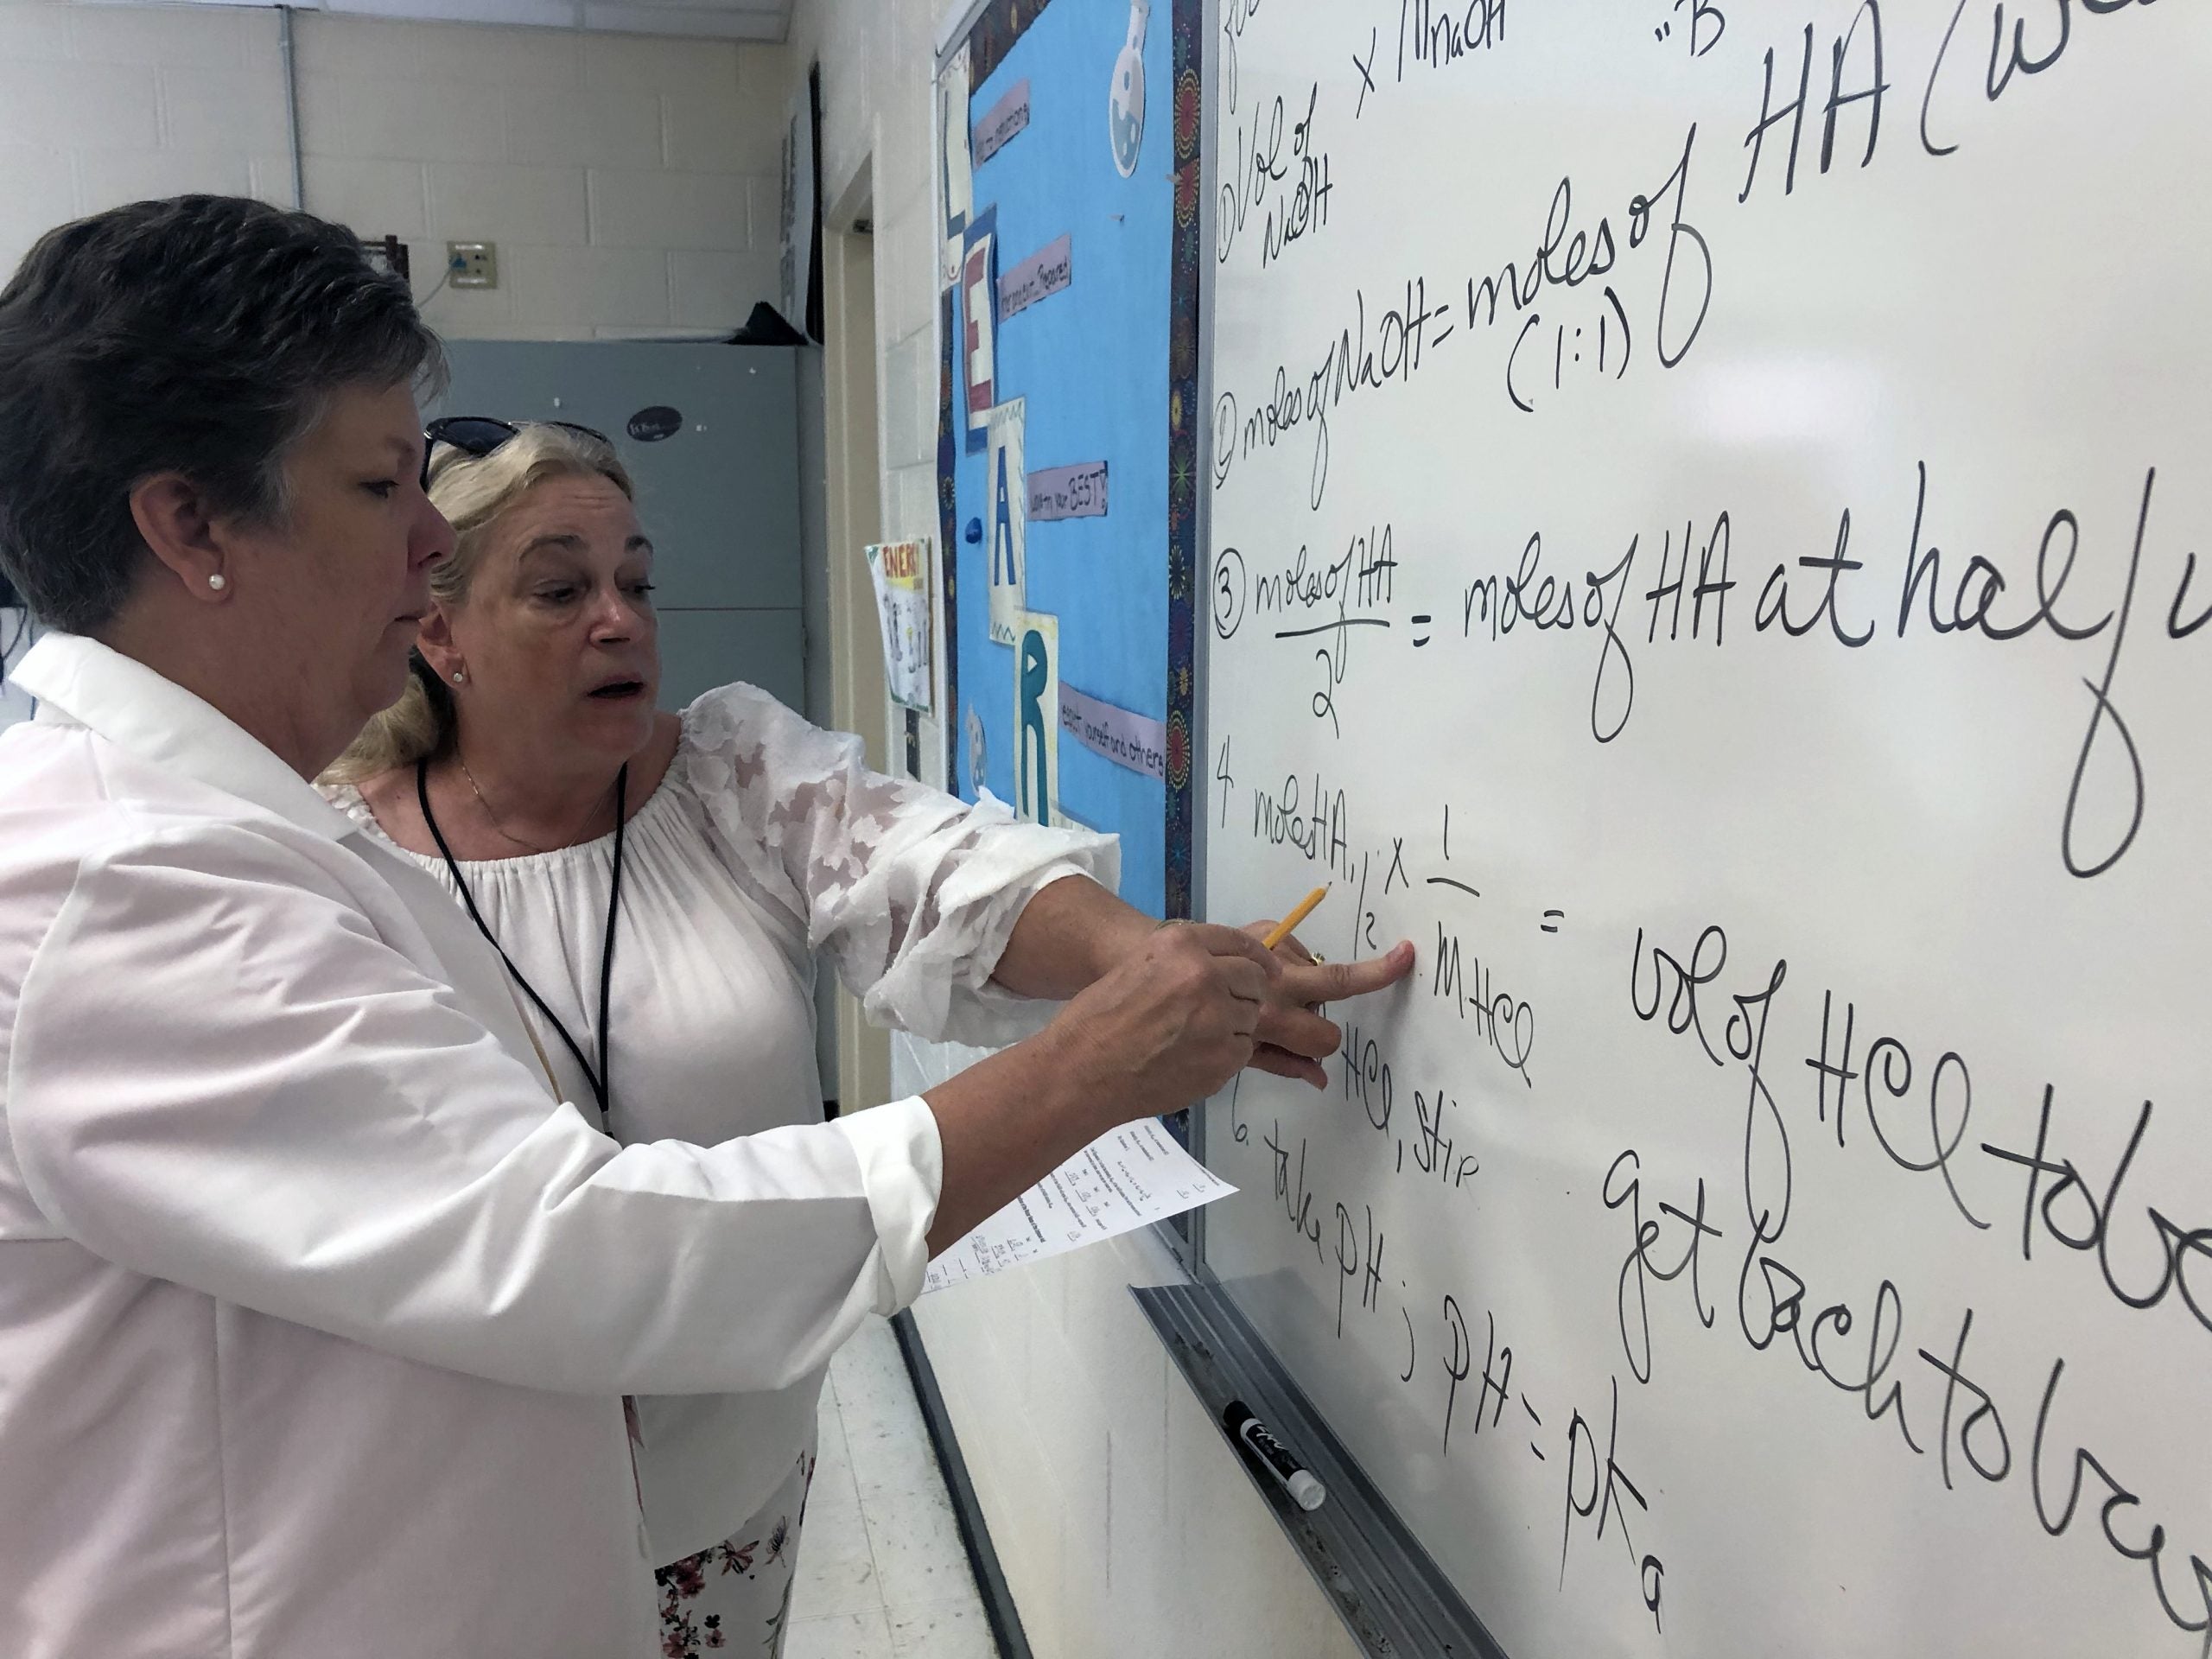 Instructor explains equation on whiteboard